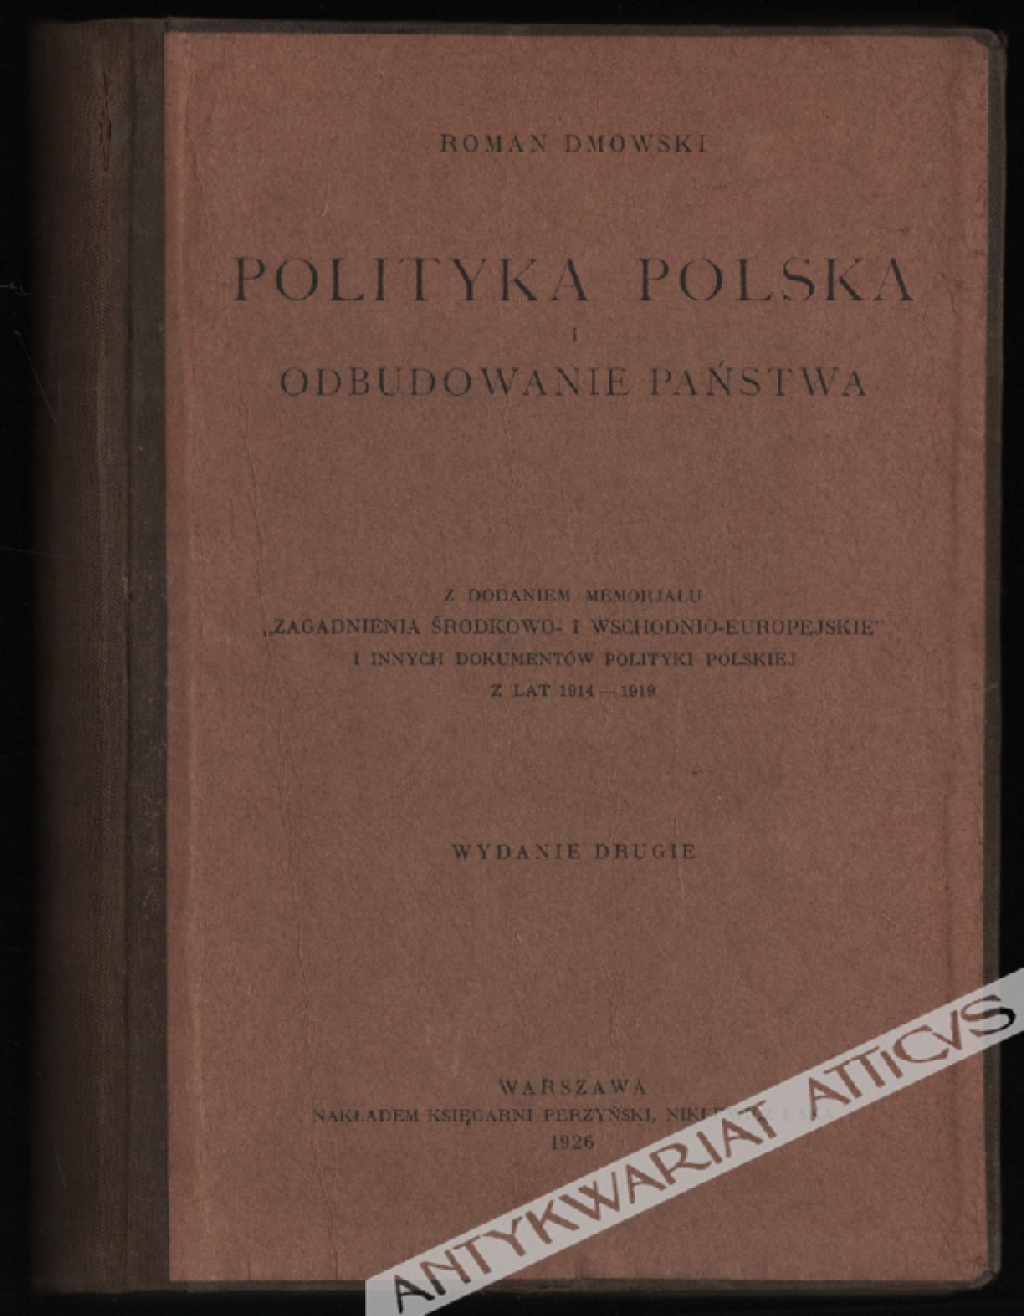 Polityka polska i odbudowanie państwa. Z dodaniem memorjału `Zagadnienia środkowo- i wschodnio-europejskie` i innych dokumentów polityki polskiej z lat 1914-1919